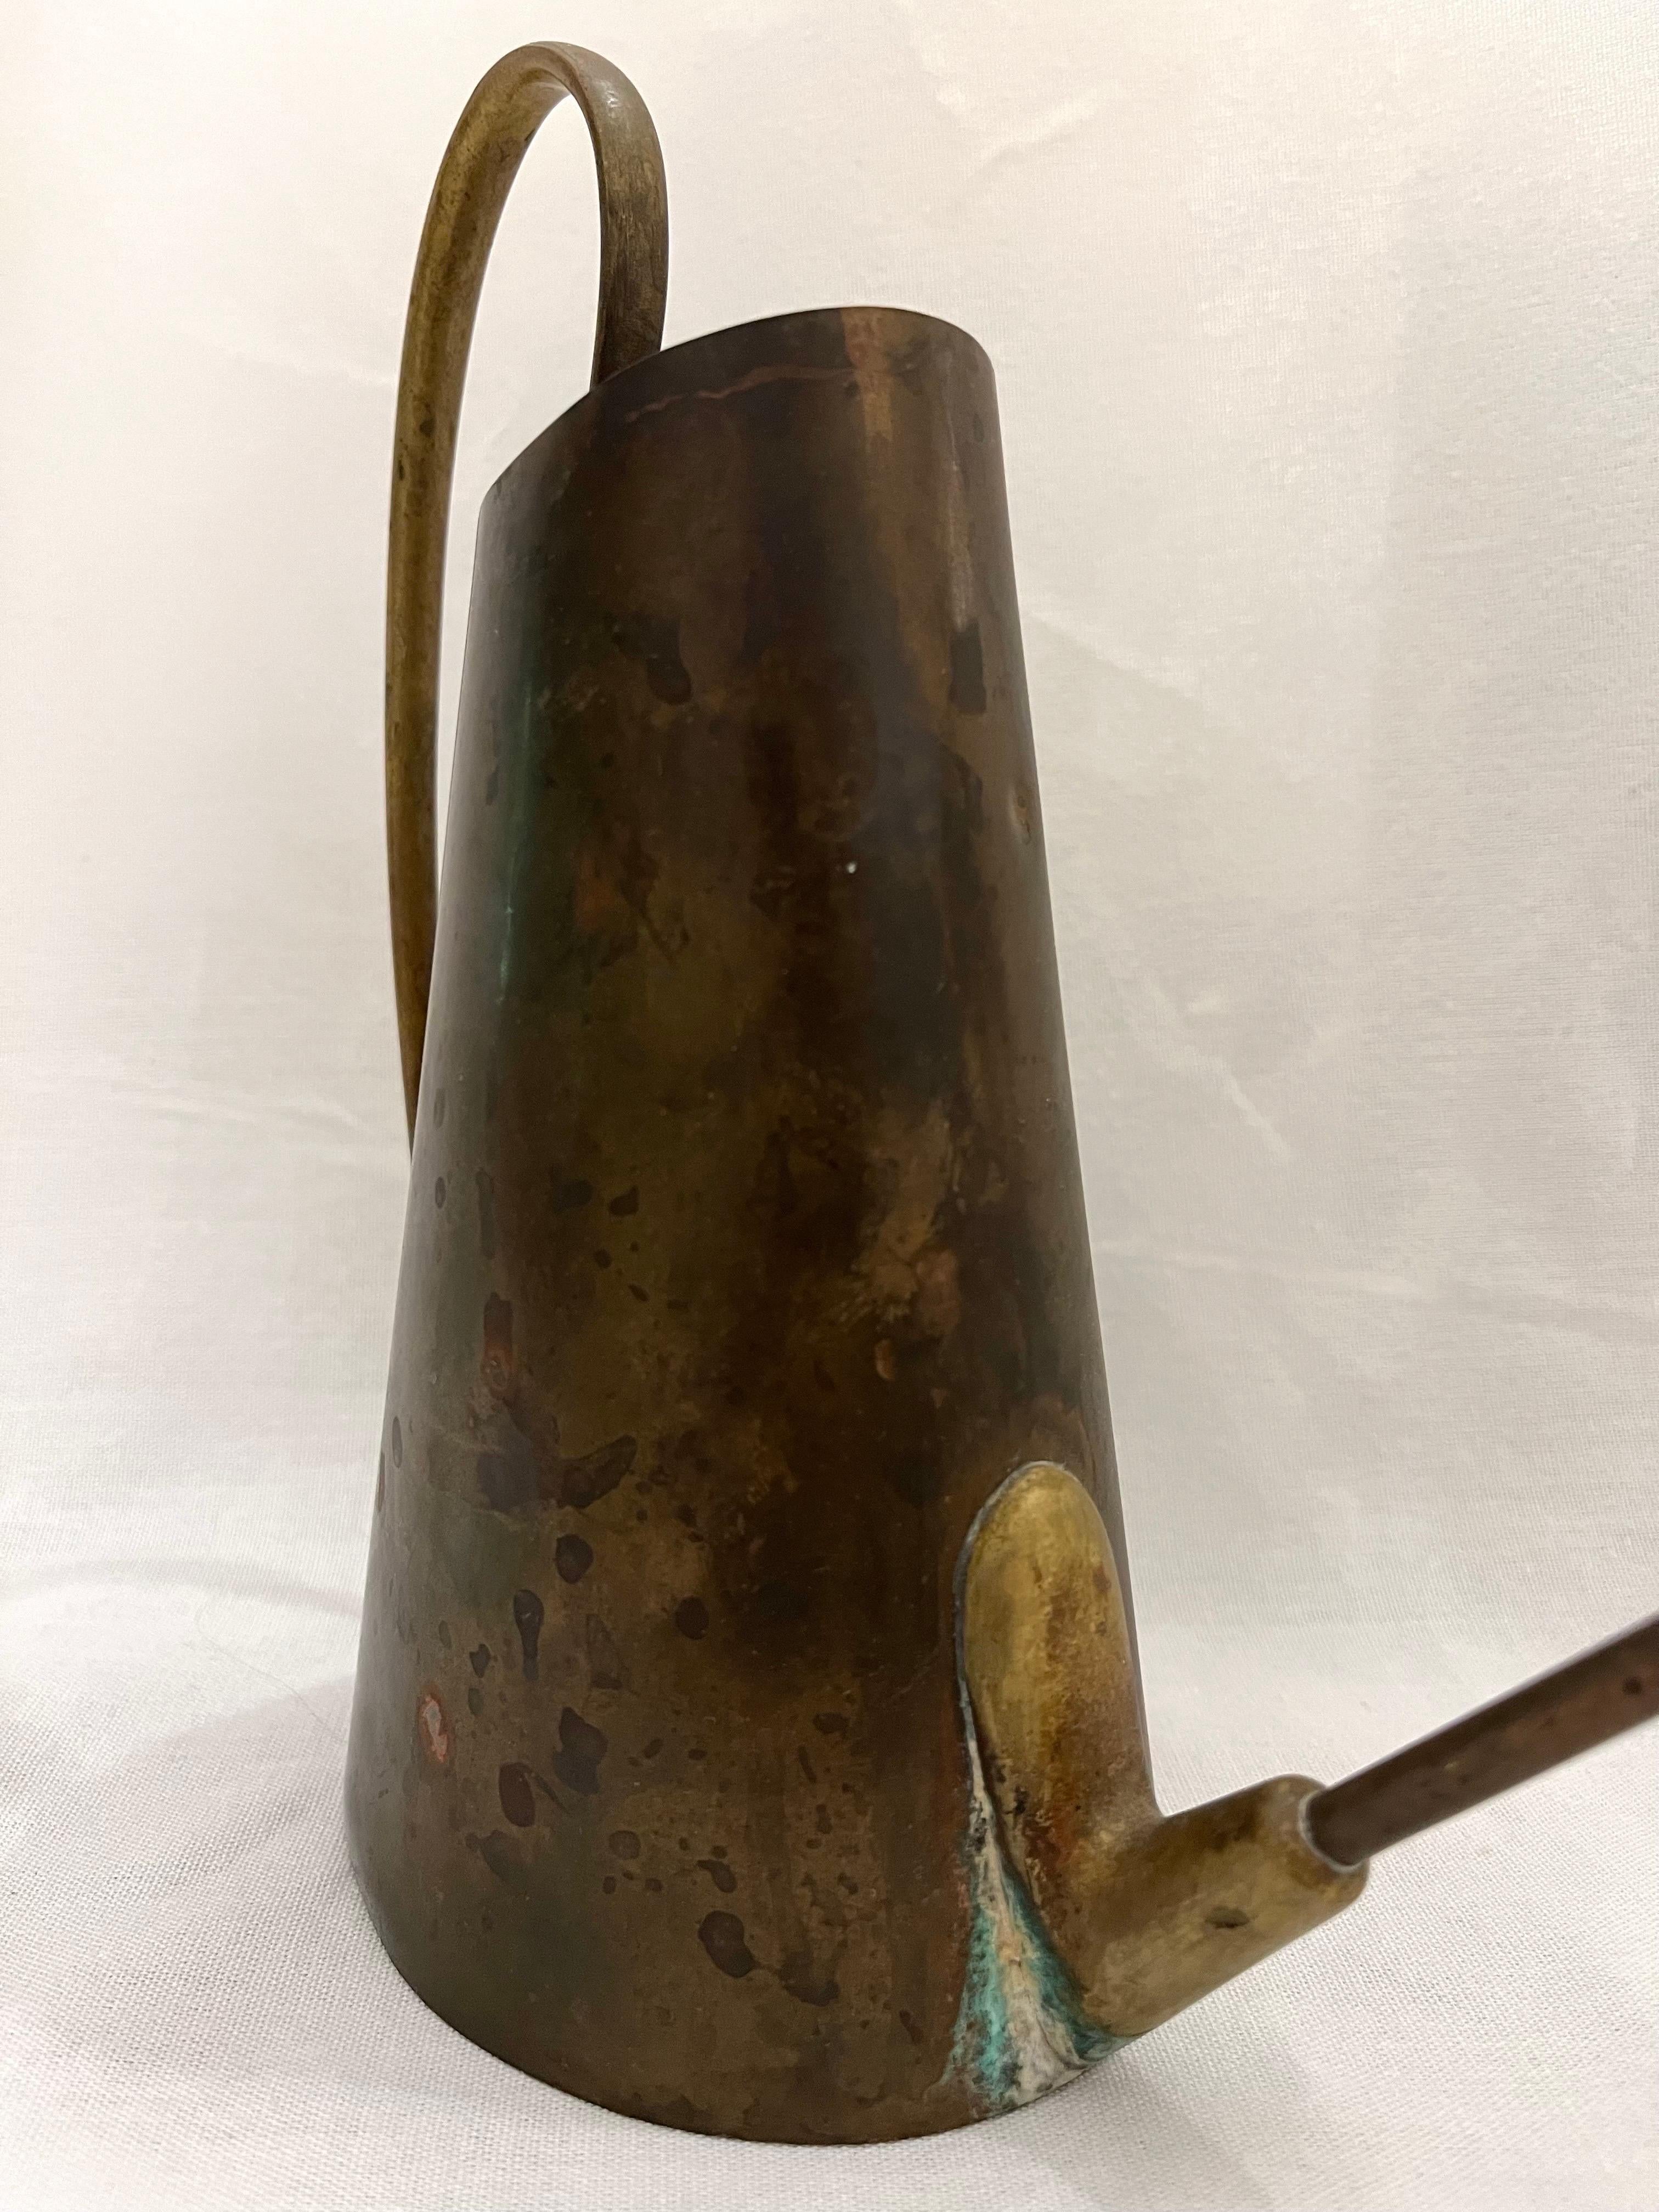 Signed Karl Hagenauer Werkstatte Wein Copper Brass Watering Can Original Patina 2